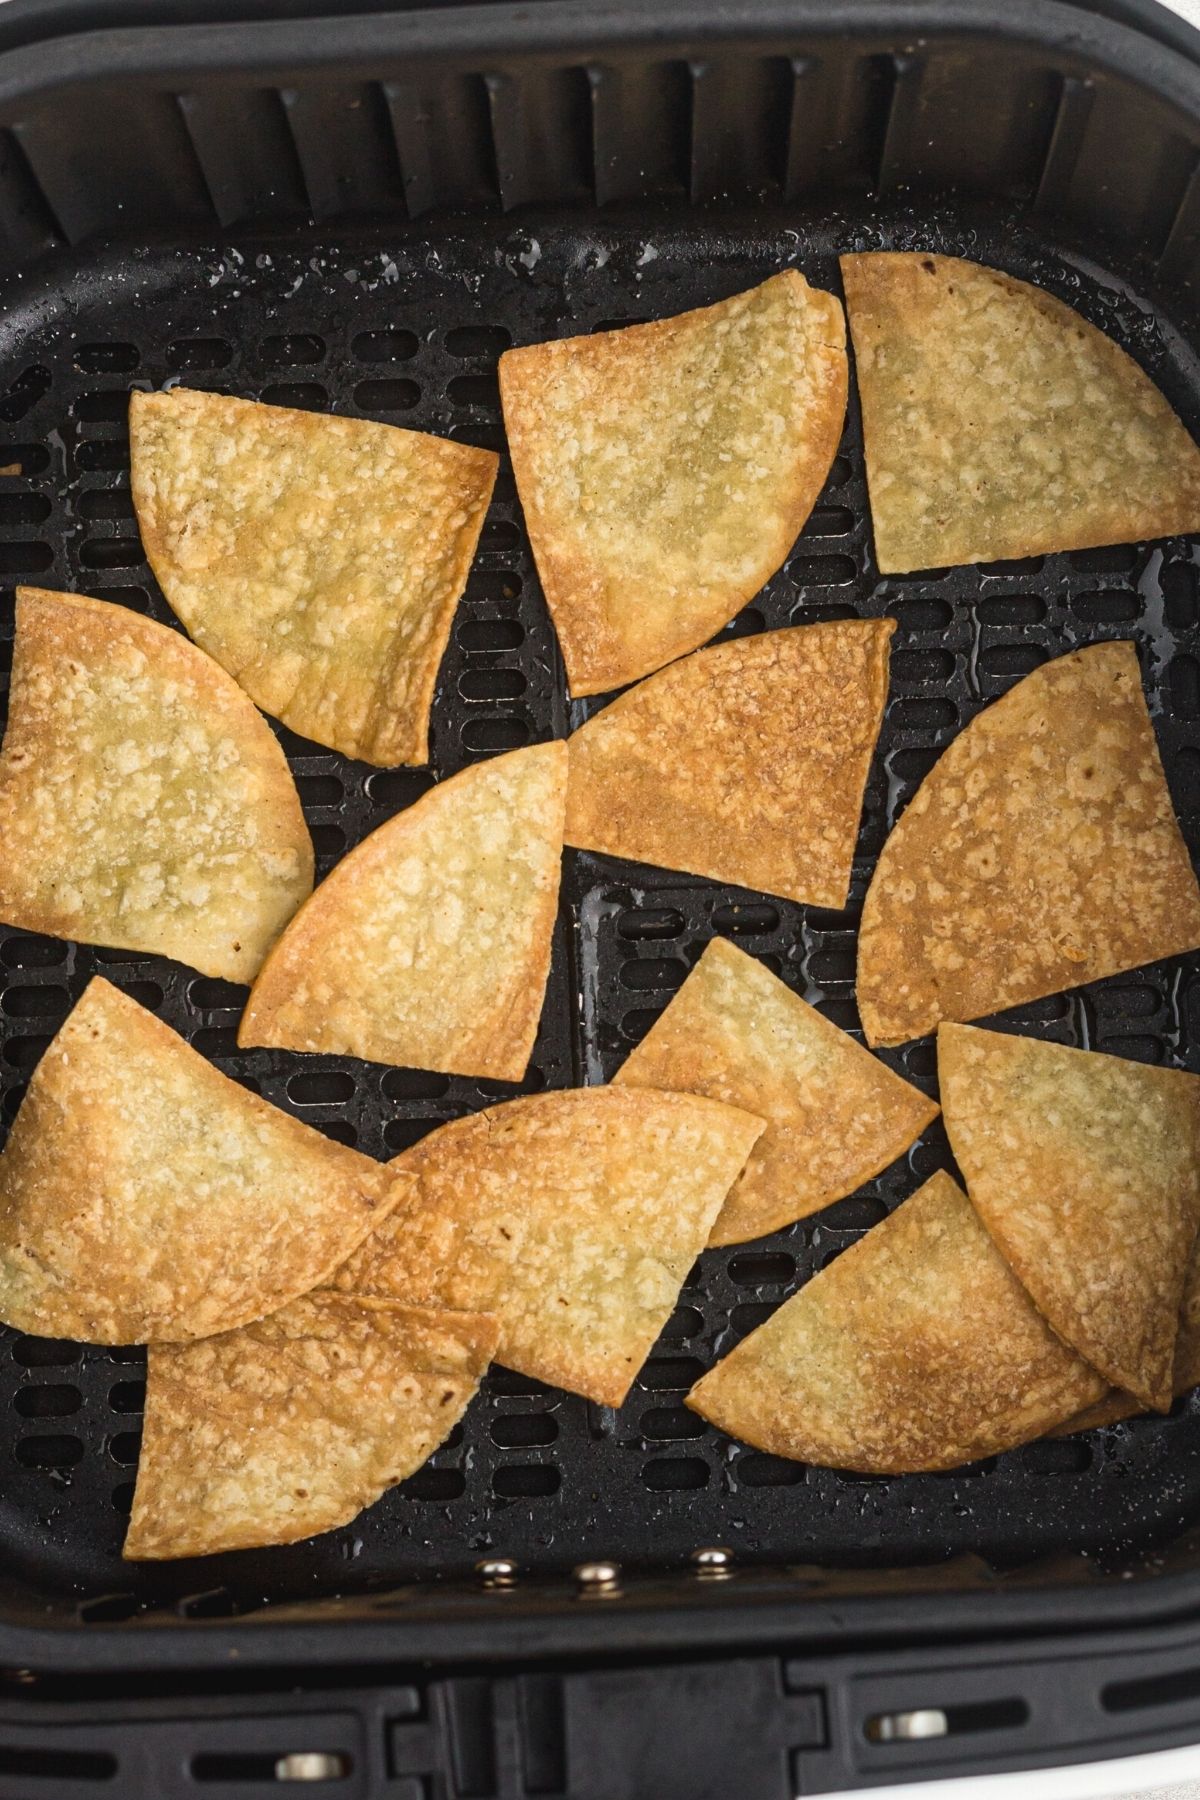 tortilla chips in air fryer basket.